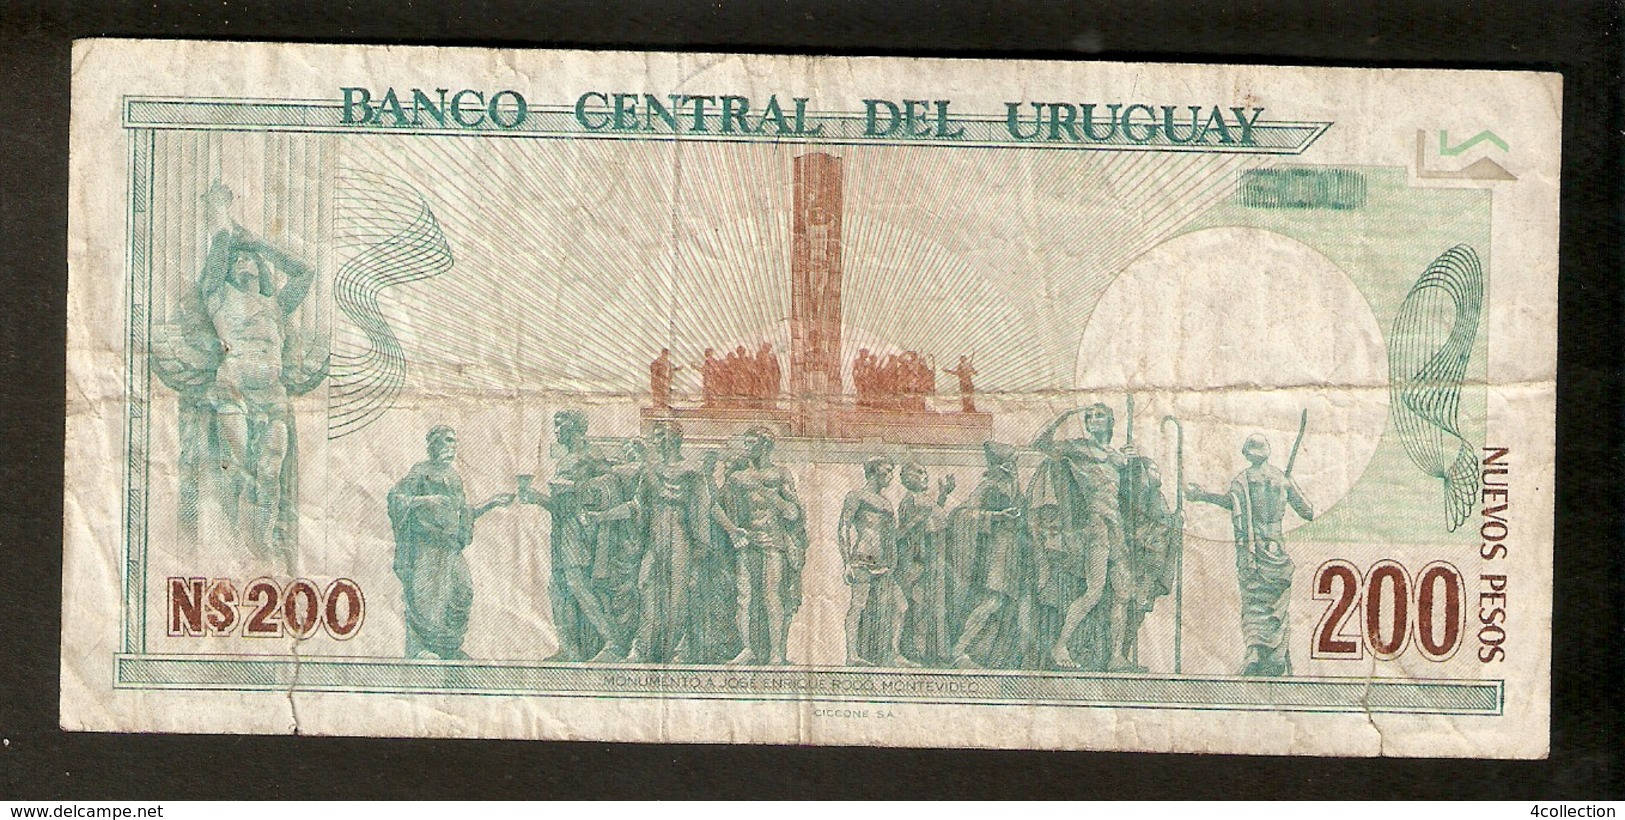 T. Banco Central Del URUGUAY Nuevos Pesos Doscientos Moneda Nacional 1986 N$ 200 # 09262010 Ser. A - Uruguay